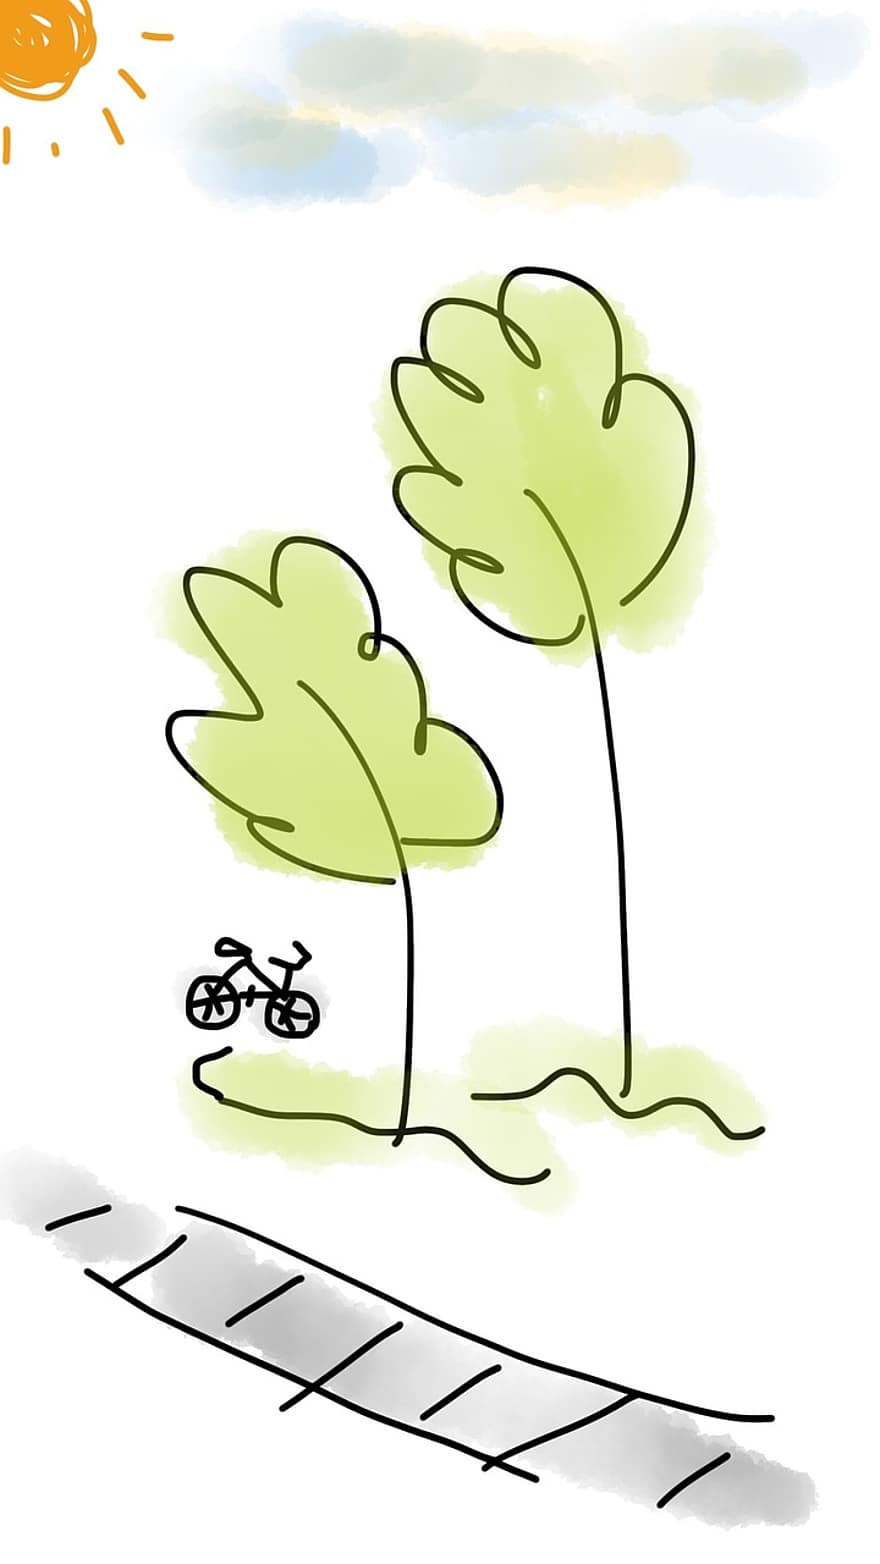 jízdní kolo, strom, venkovní, zelená, stezka, sport, kolo, silnice, aktivita, jízda na kole, slunce